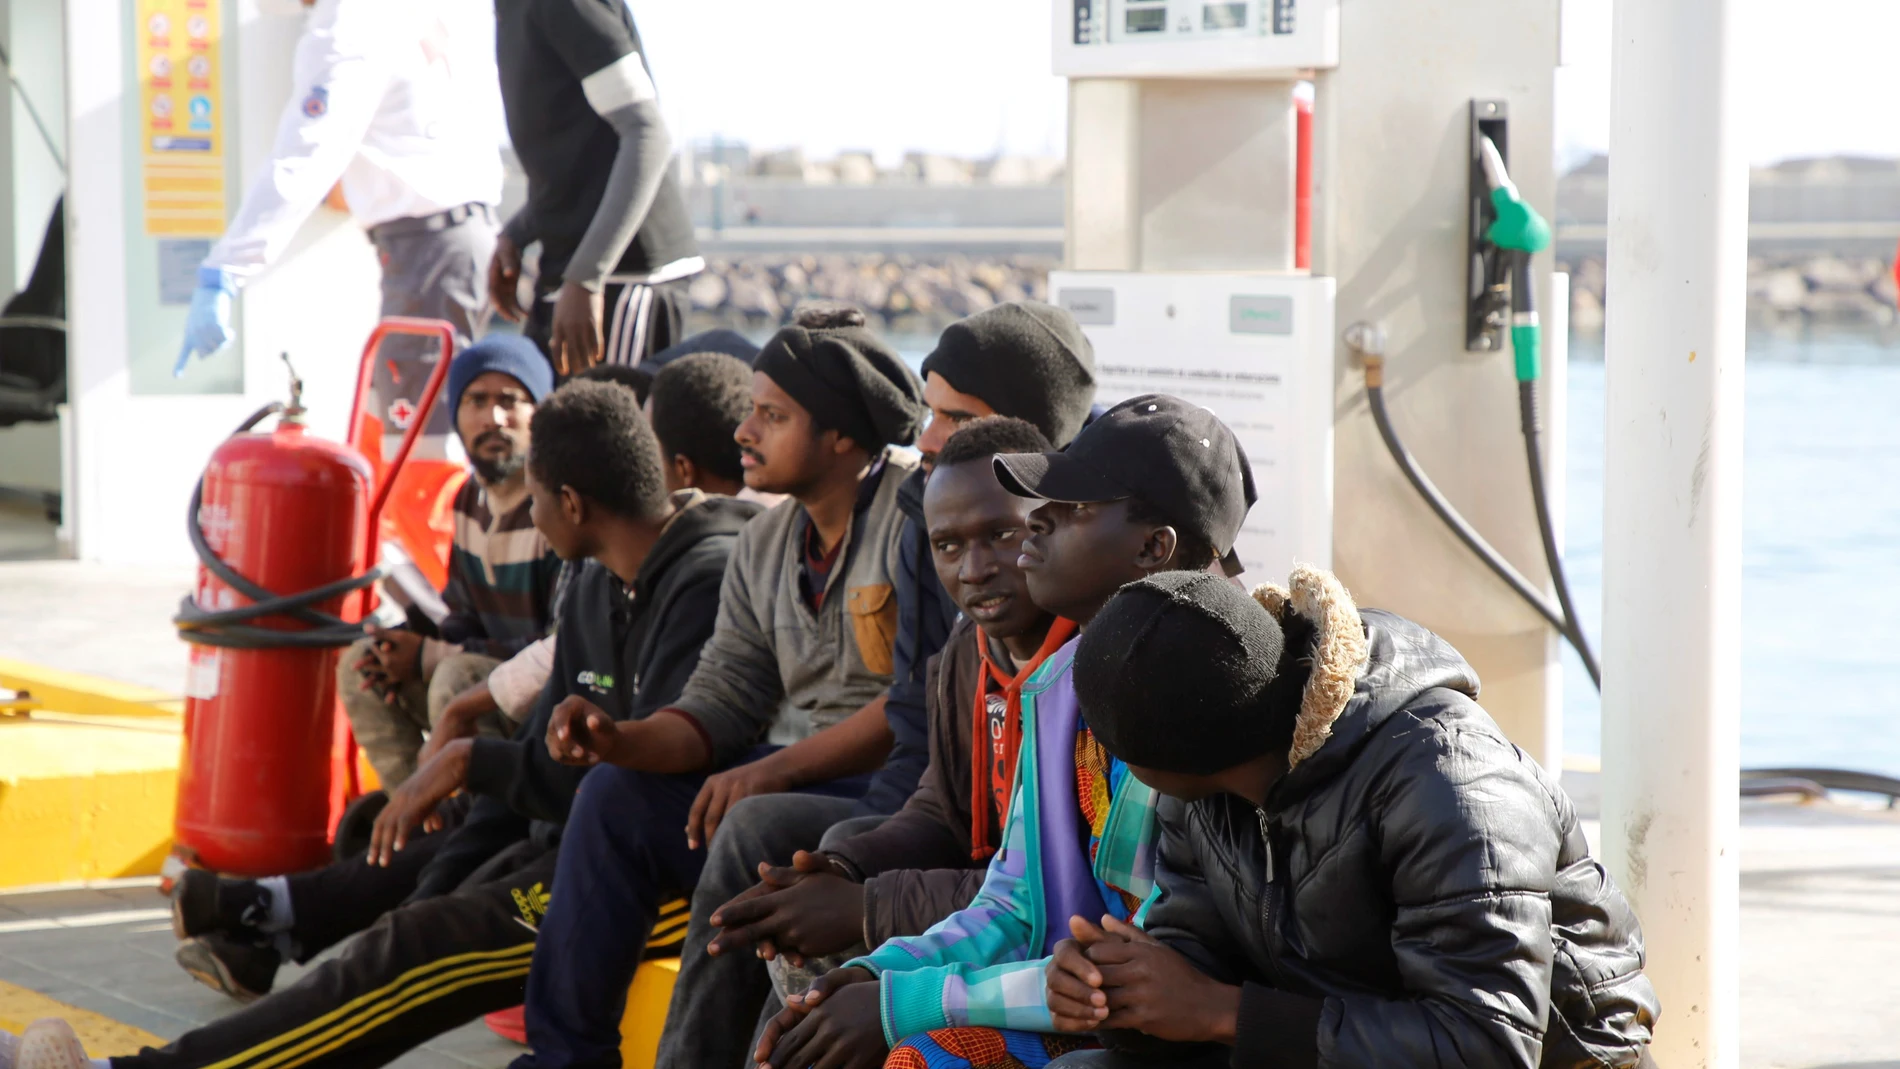 Migrantes rescatados en las costas españolas